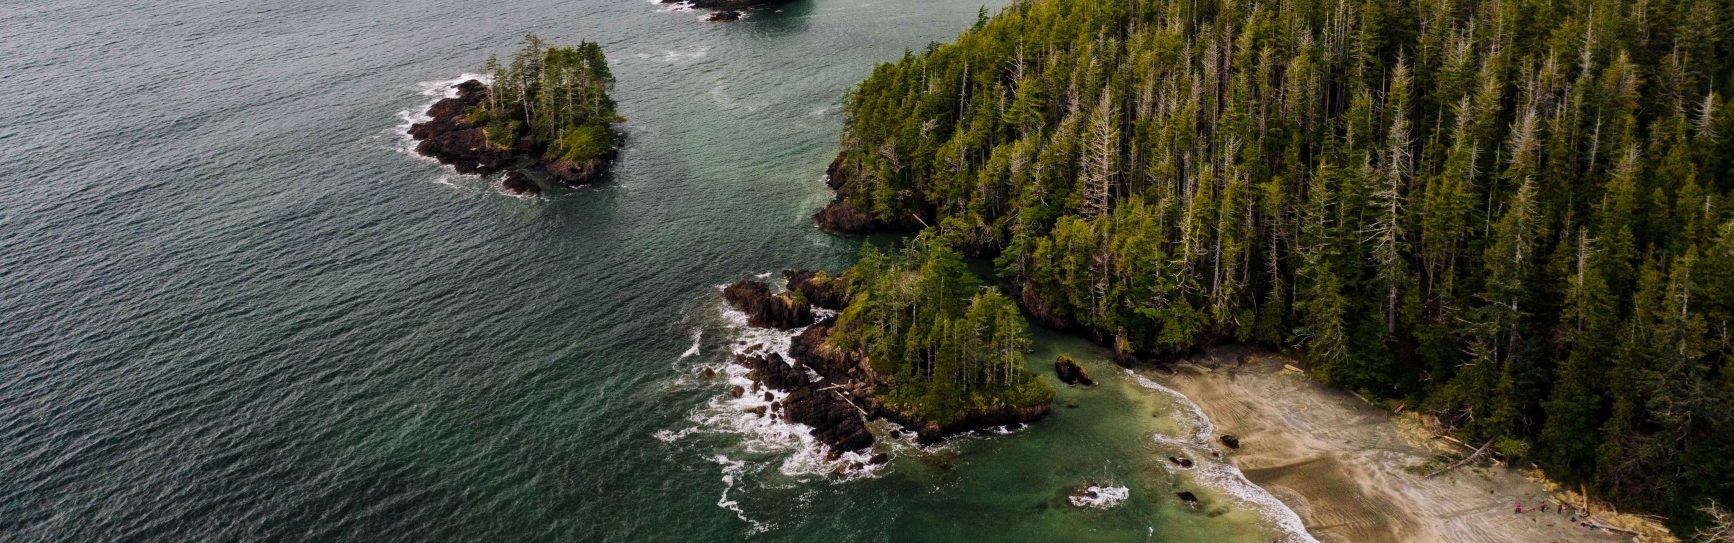 Cape Scott Provincial Park on Vancouver Island